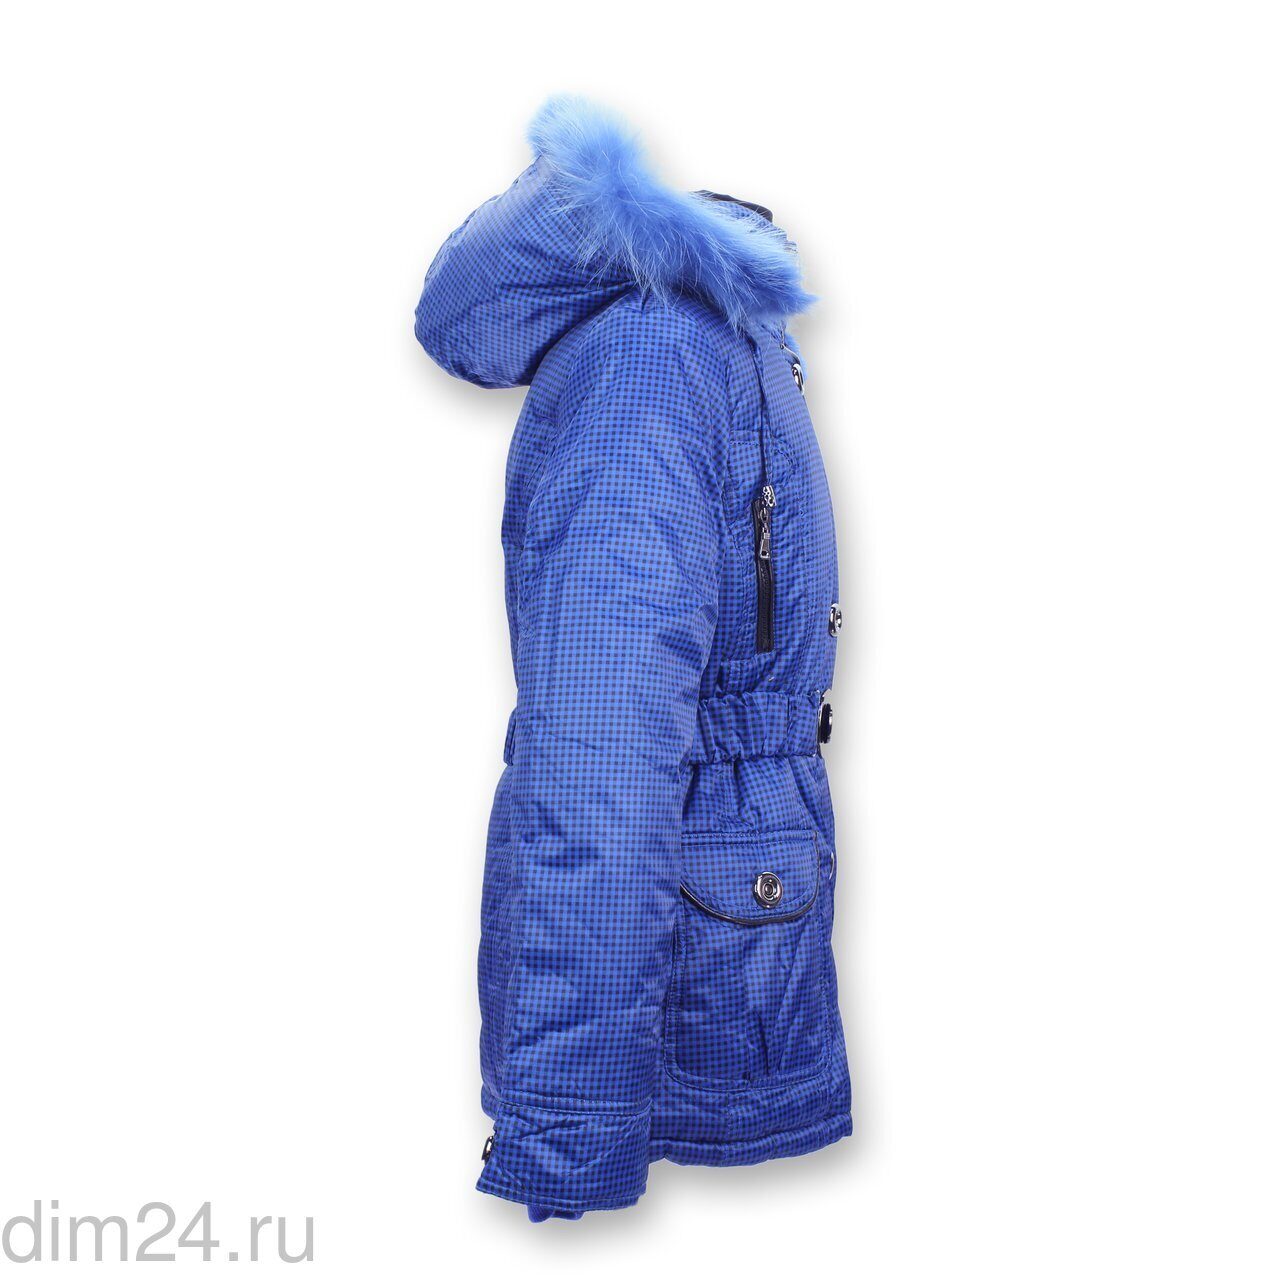 Куртка для девочек зима Moonbox размеры с S по 2XL (5 шт.)